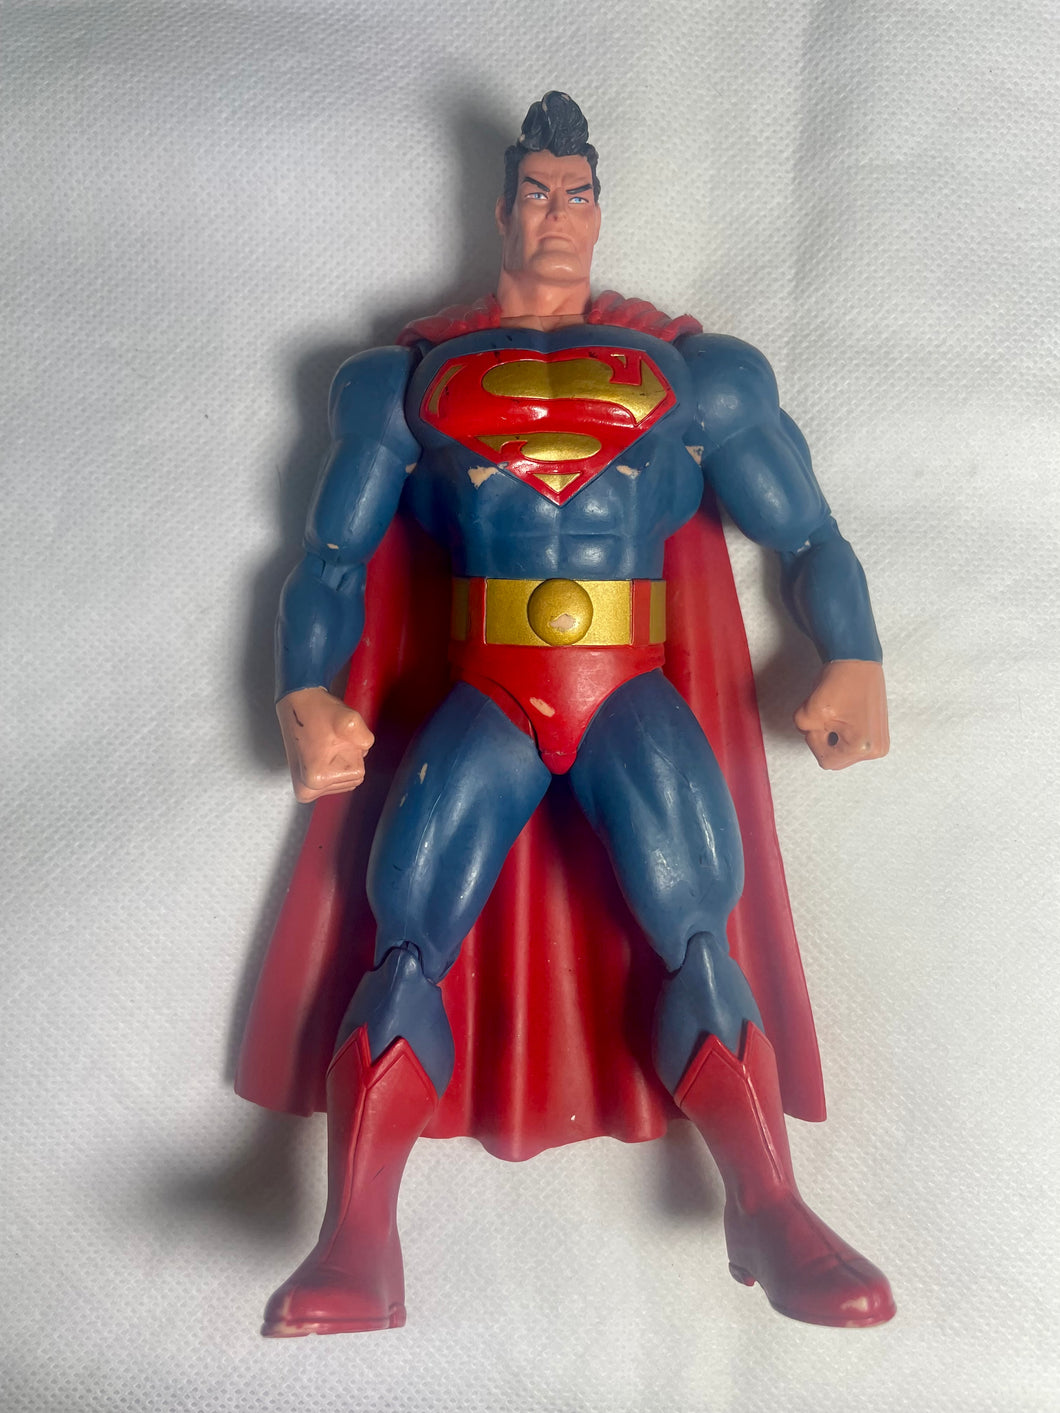 Superman Frank Miller 7” action figure